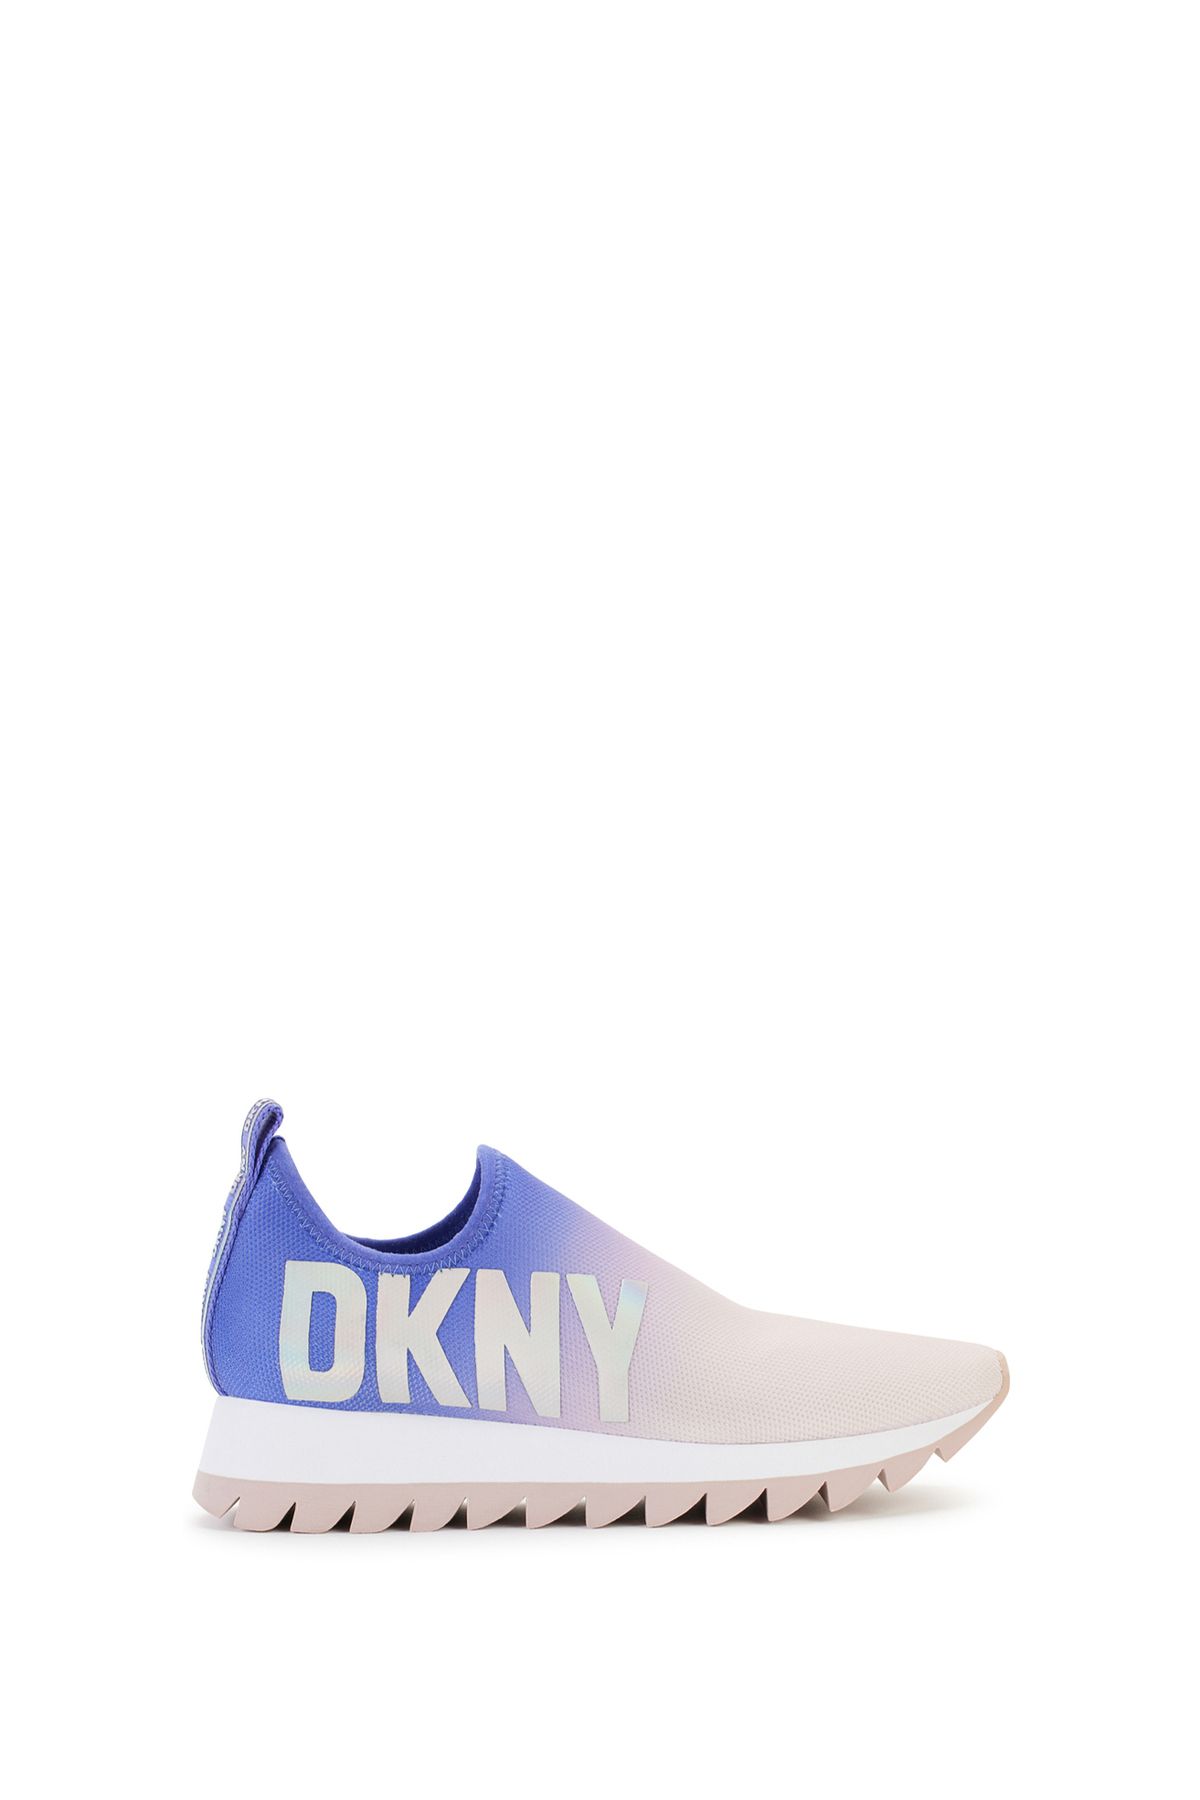 Dkny Pembe Kadın Sneaker K4273491AHI